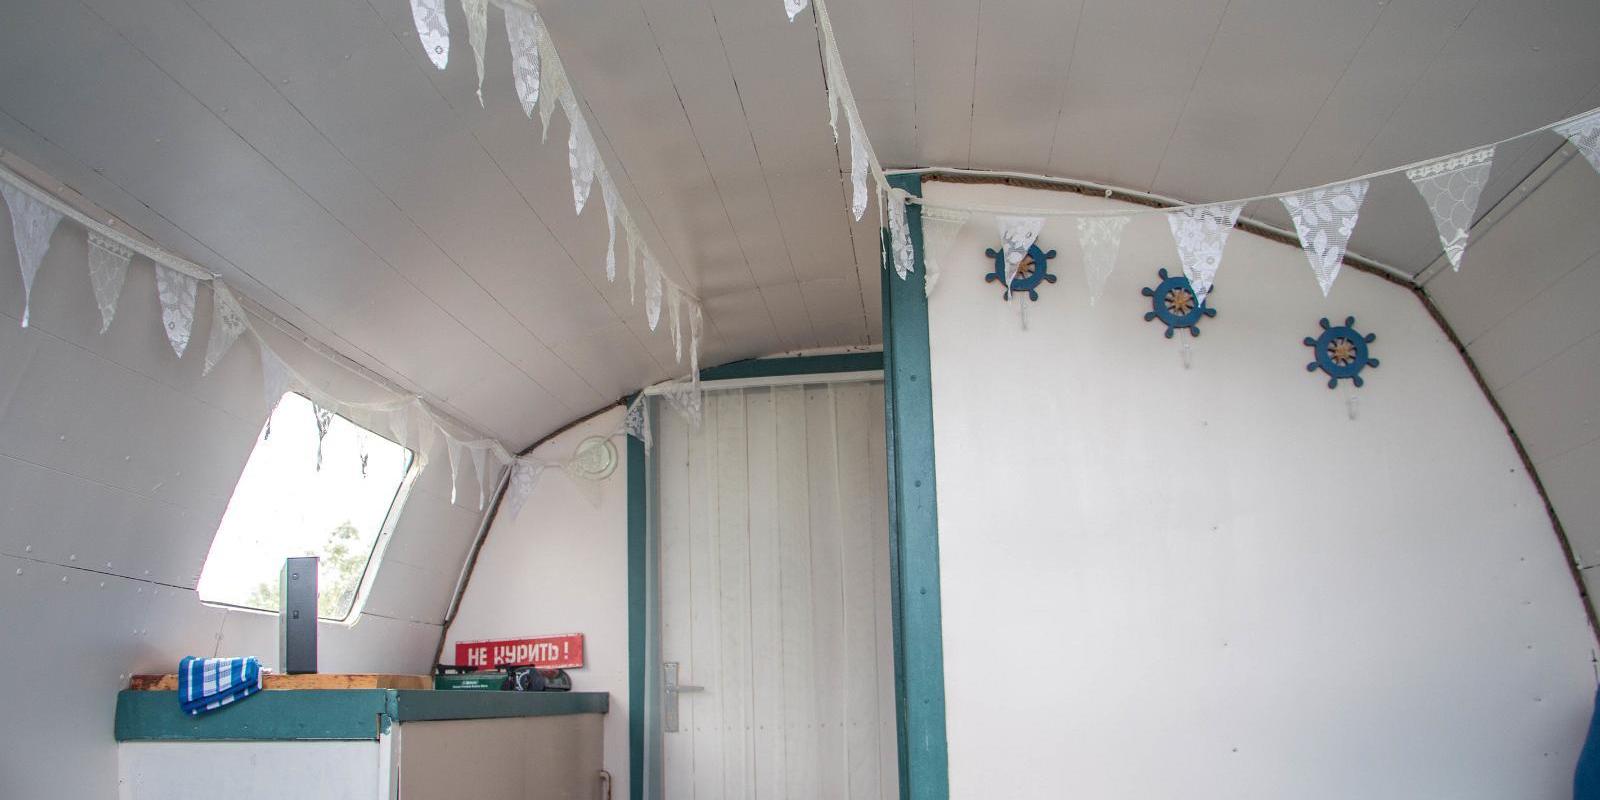 Erlebnisübernachtung im Saunaboot auf dem Peipussee, das Innere des Saunaboots ist nostalgisch gemütlich